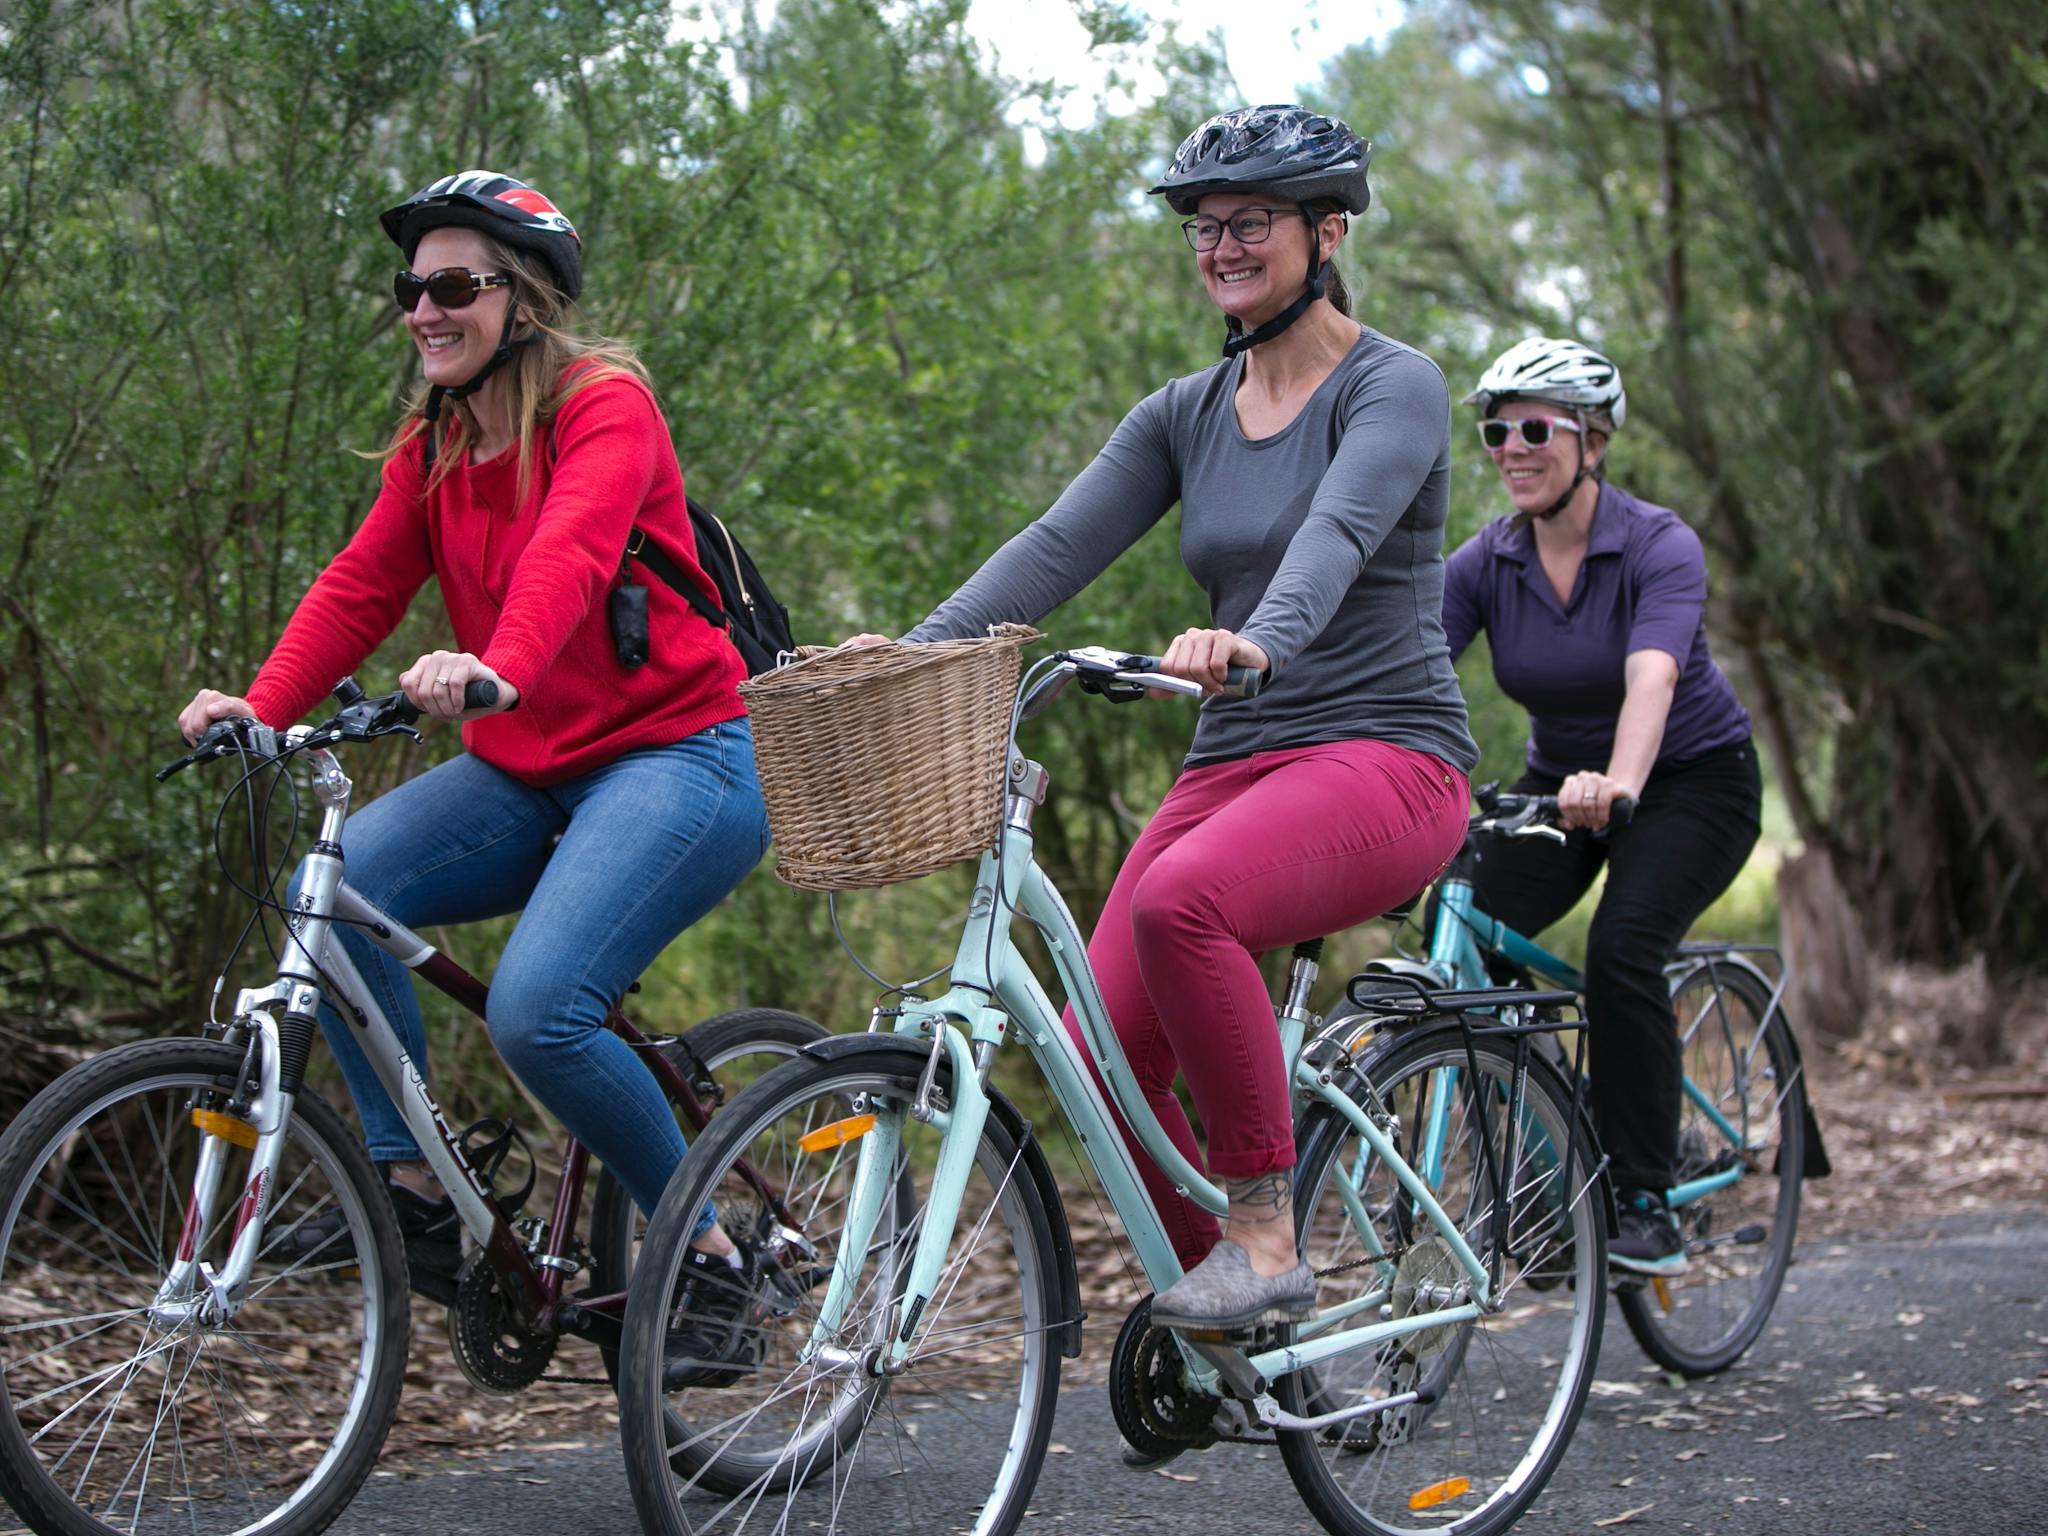 Three cyclists enjoying a bike ride